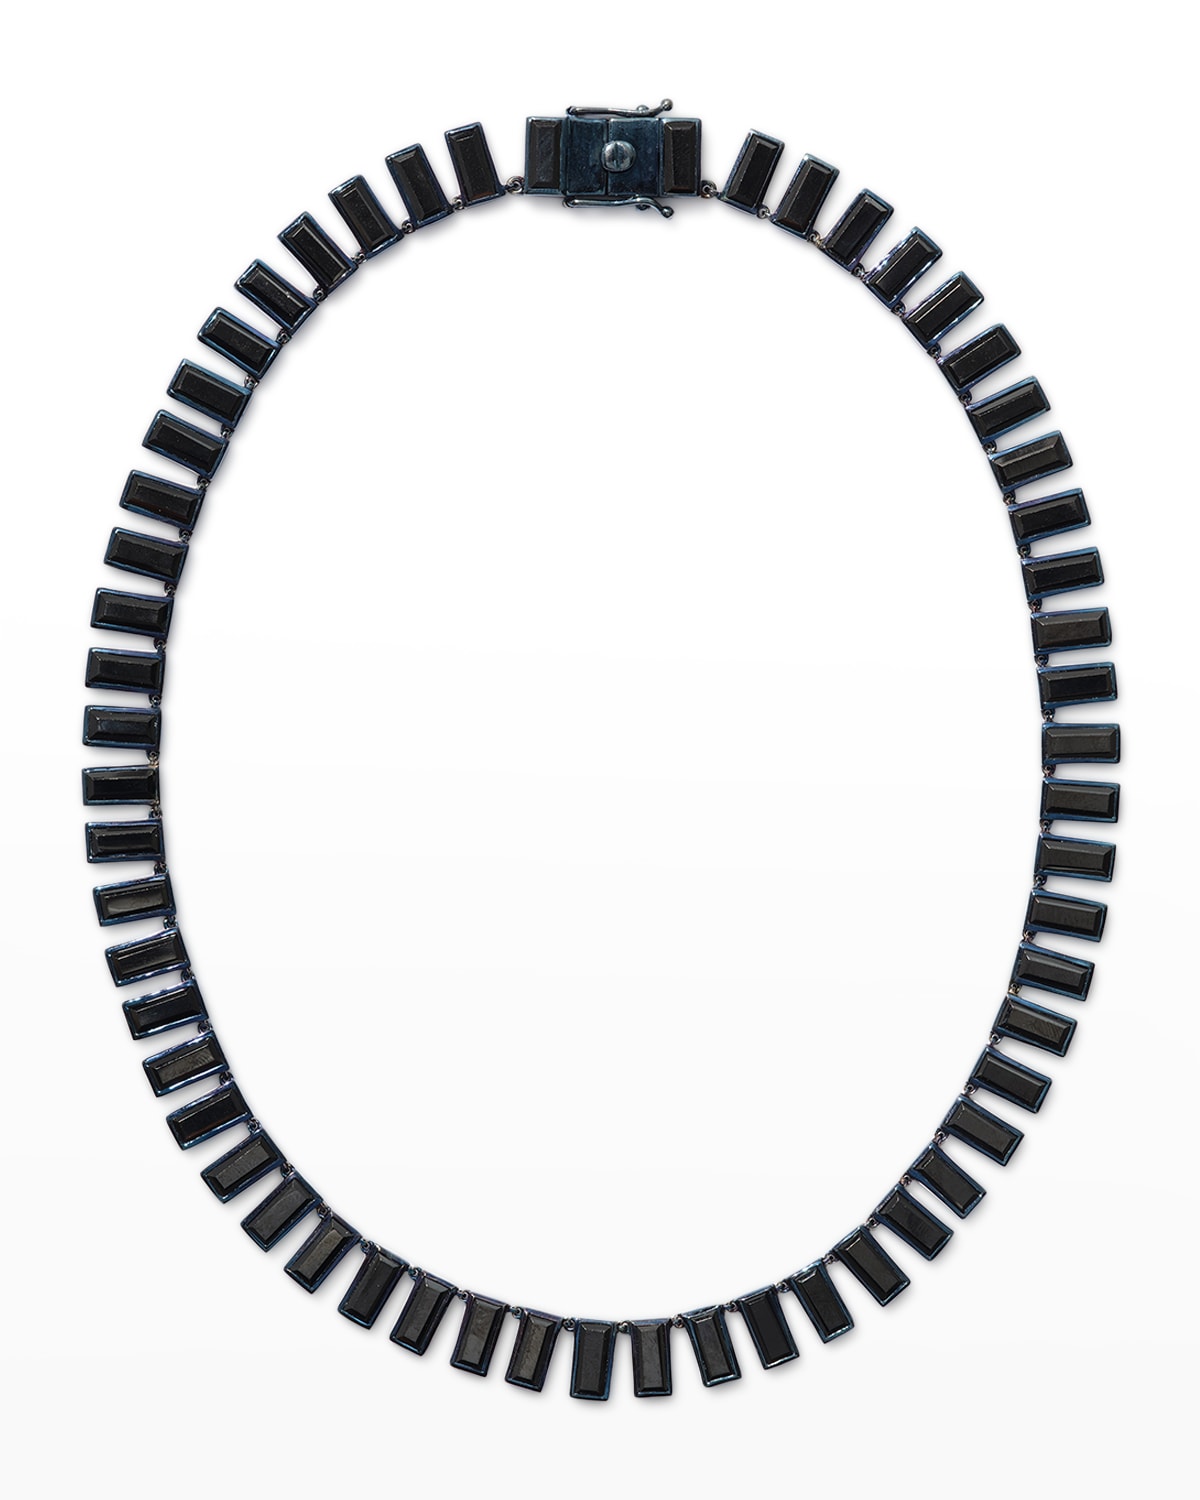 Baguette Tile Riviere Necklace in Black Spinel